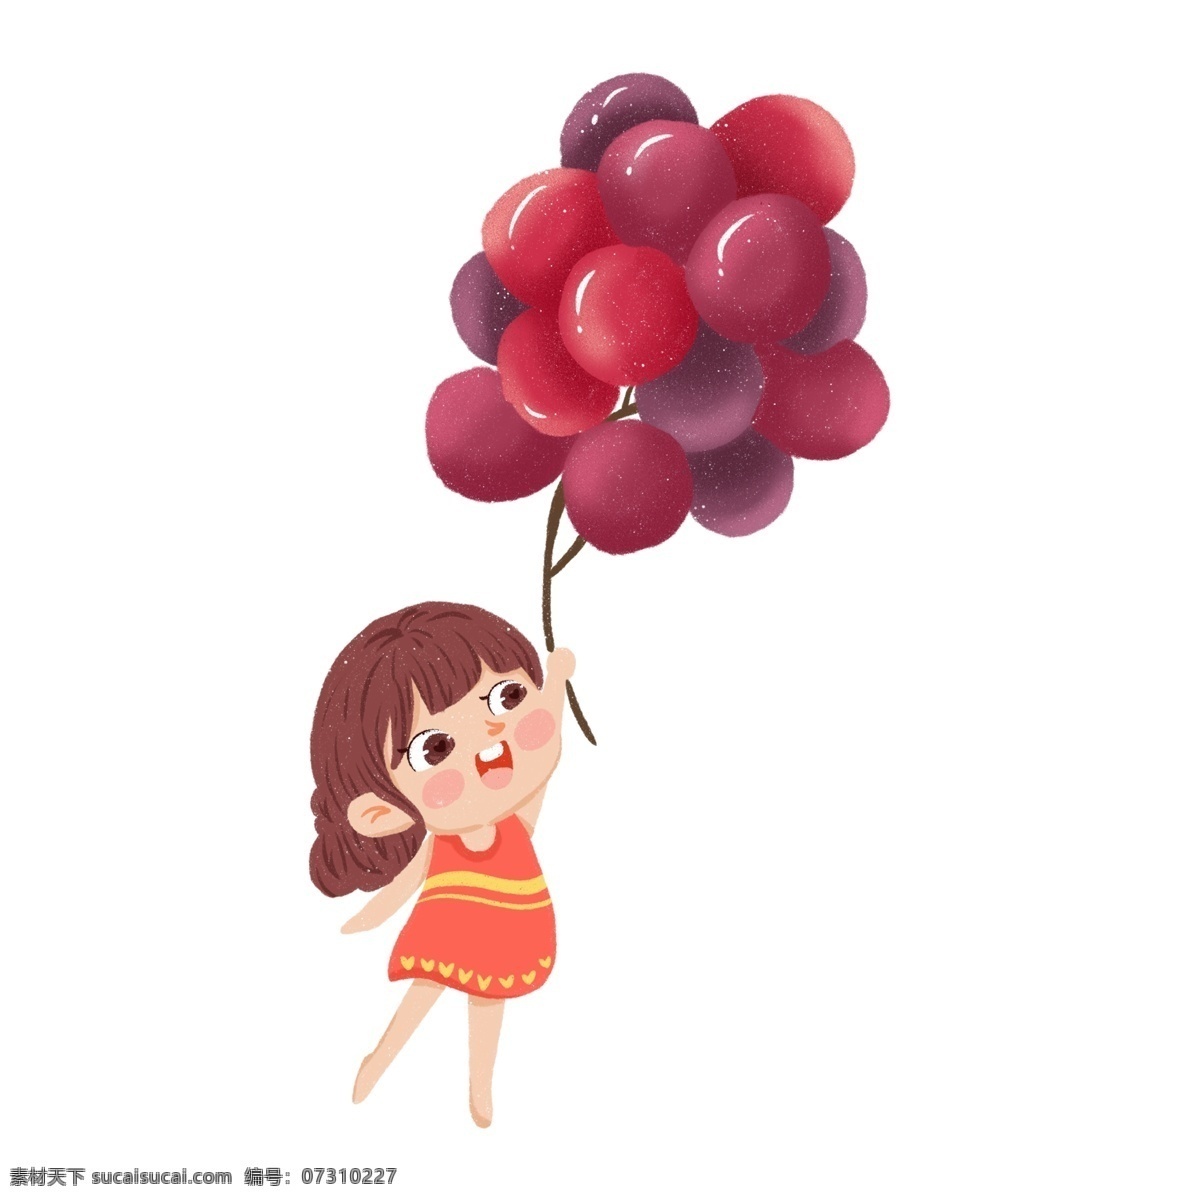 一个 踮着脚 葡萄 小女孩 葡萄气球 紫色 水果 红脸 橙色裙子 连衣裙 伸手 微笑